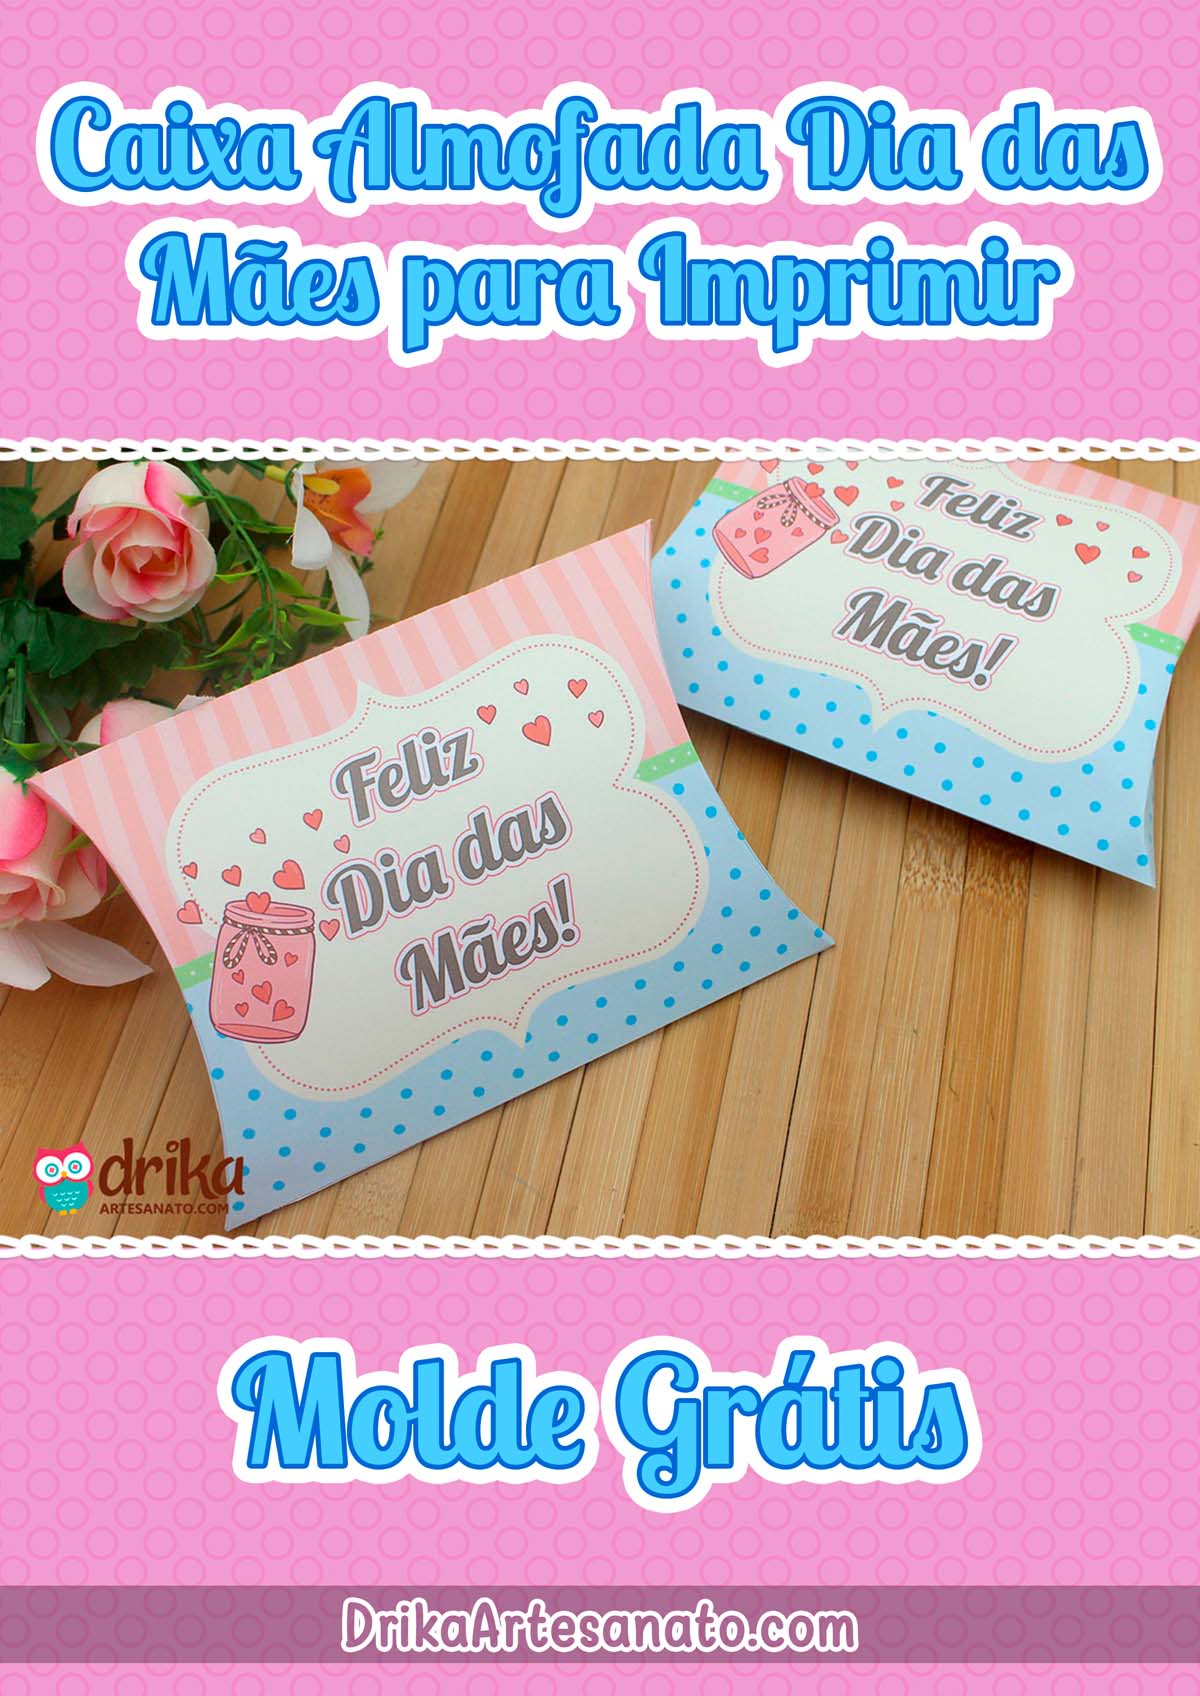 Molde Caixa Almofada Dia das Mães para Imprimir Grátis em PDF